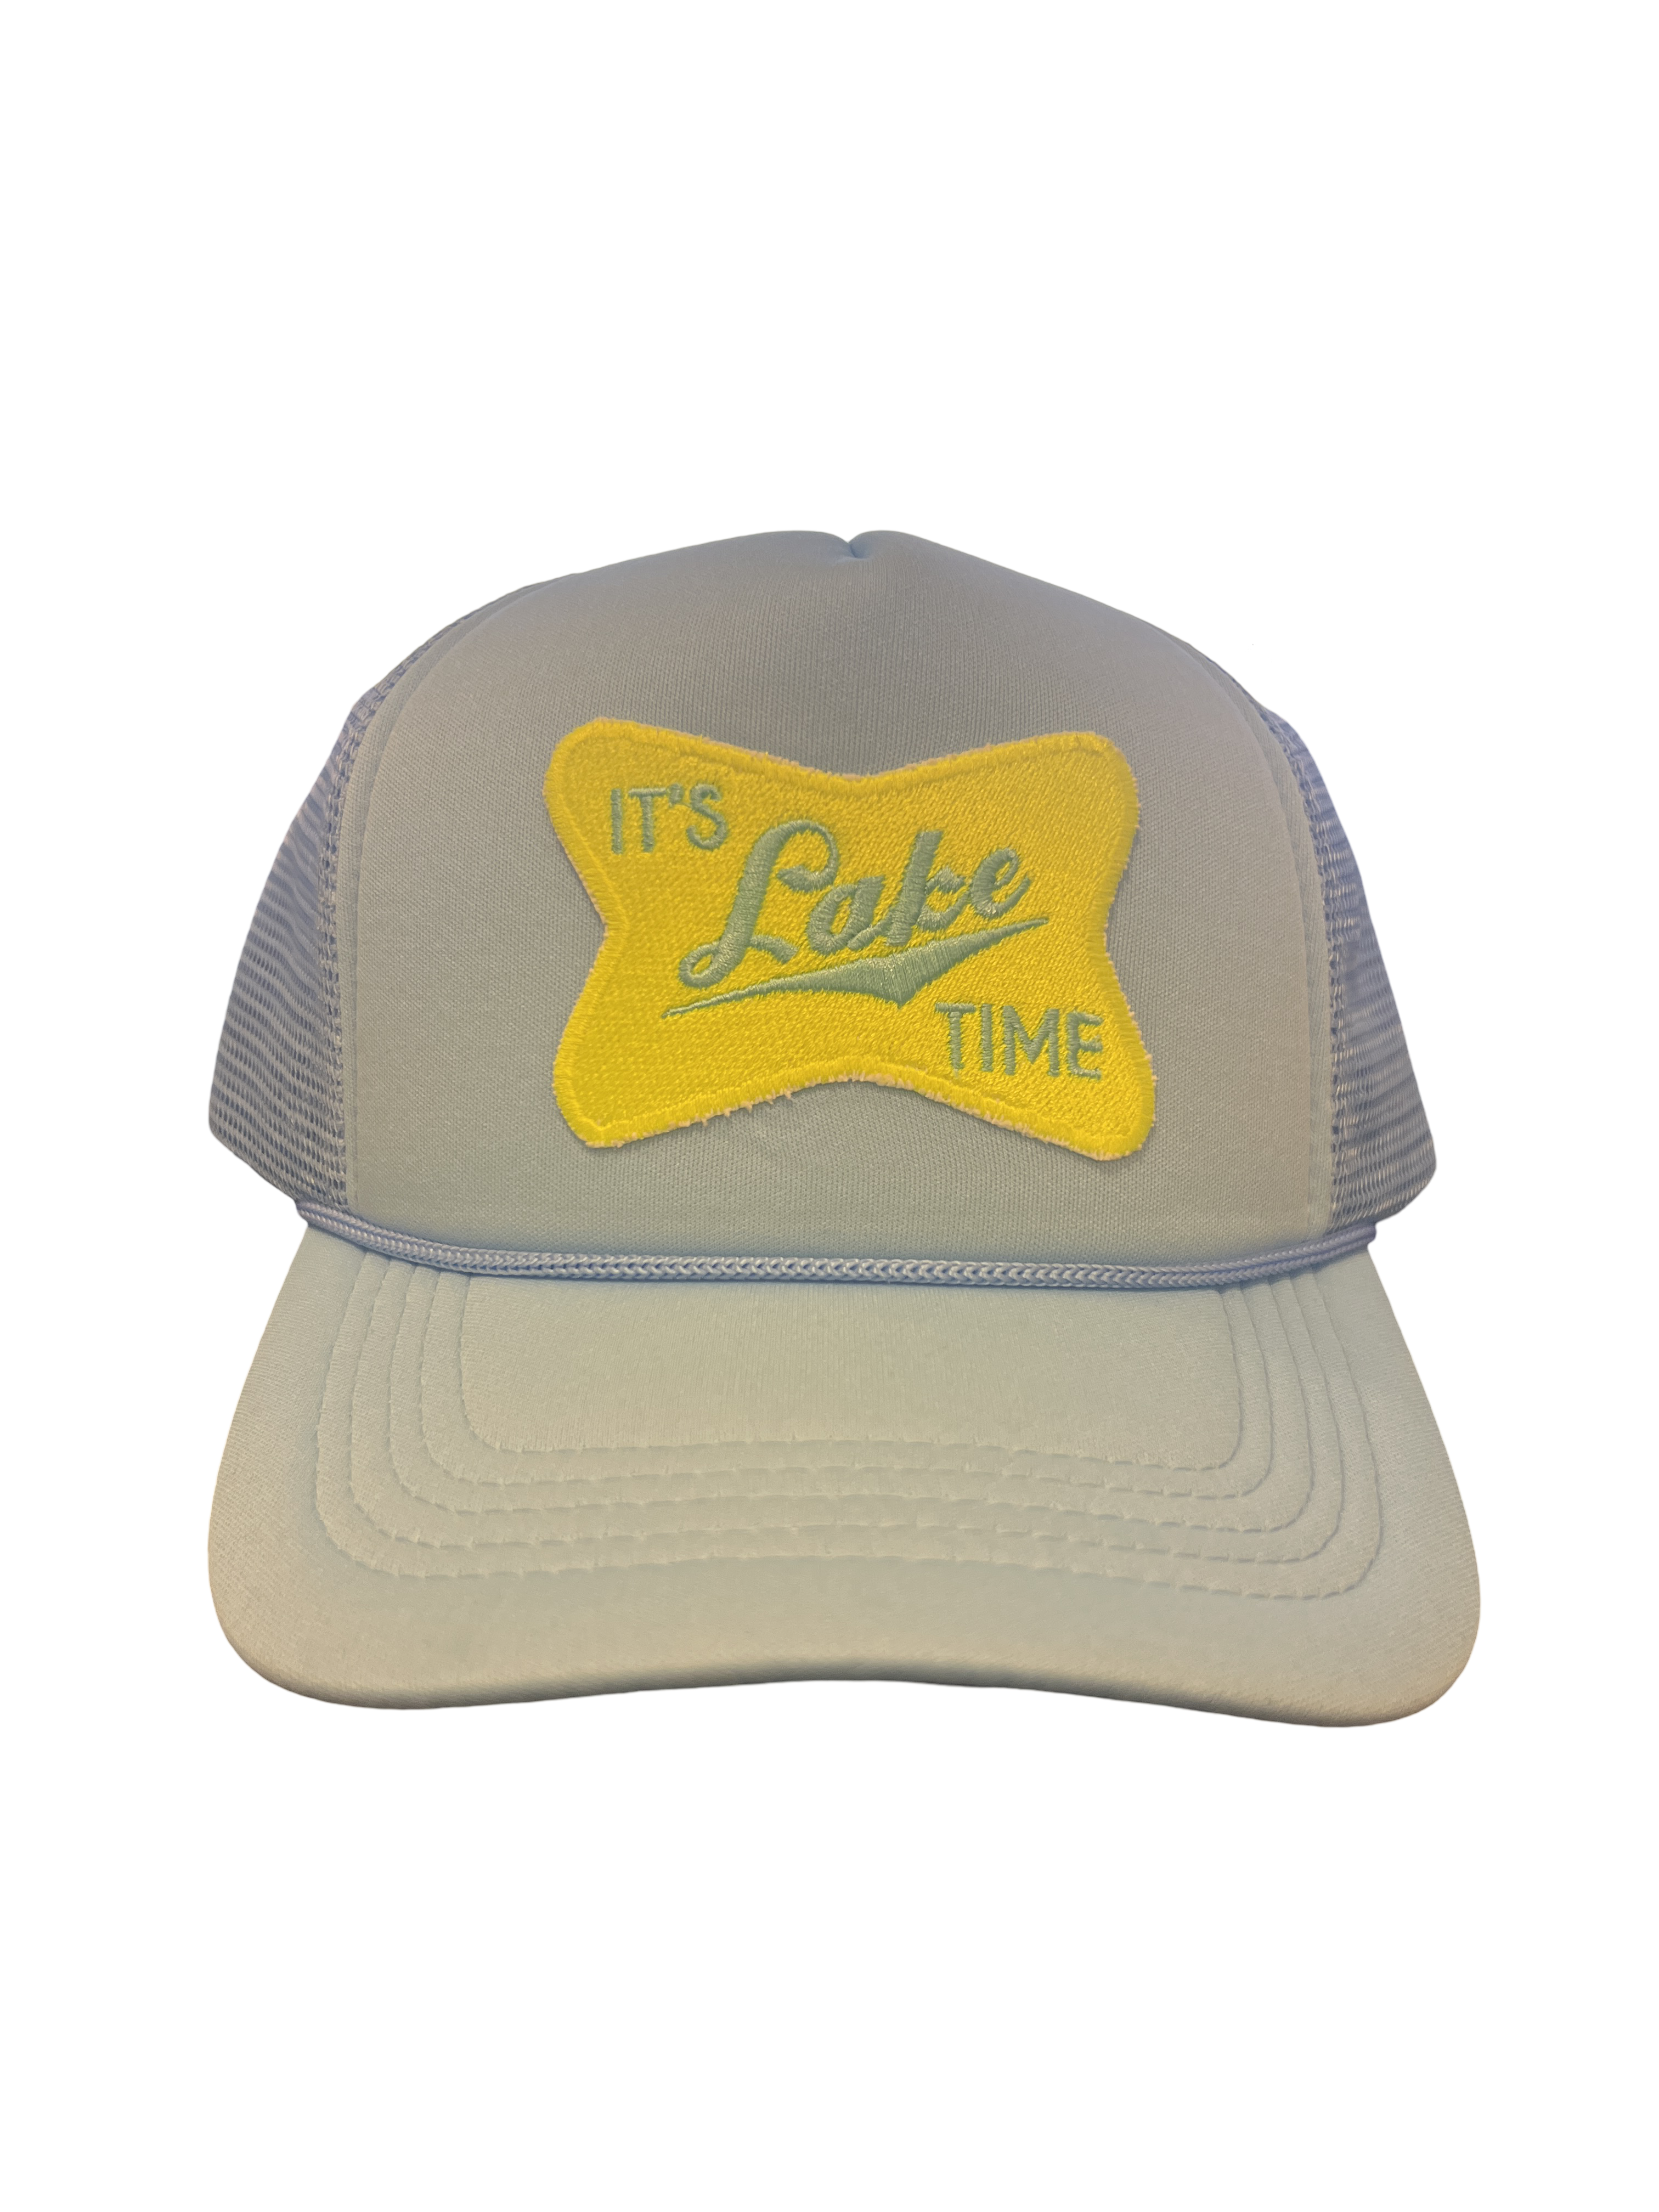 Trucker Hat Foam "It's Lake Time"